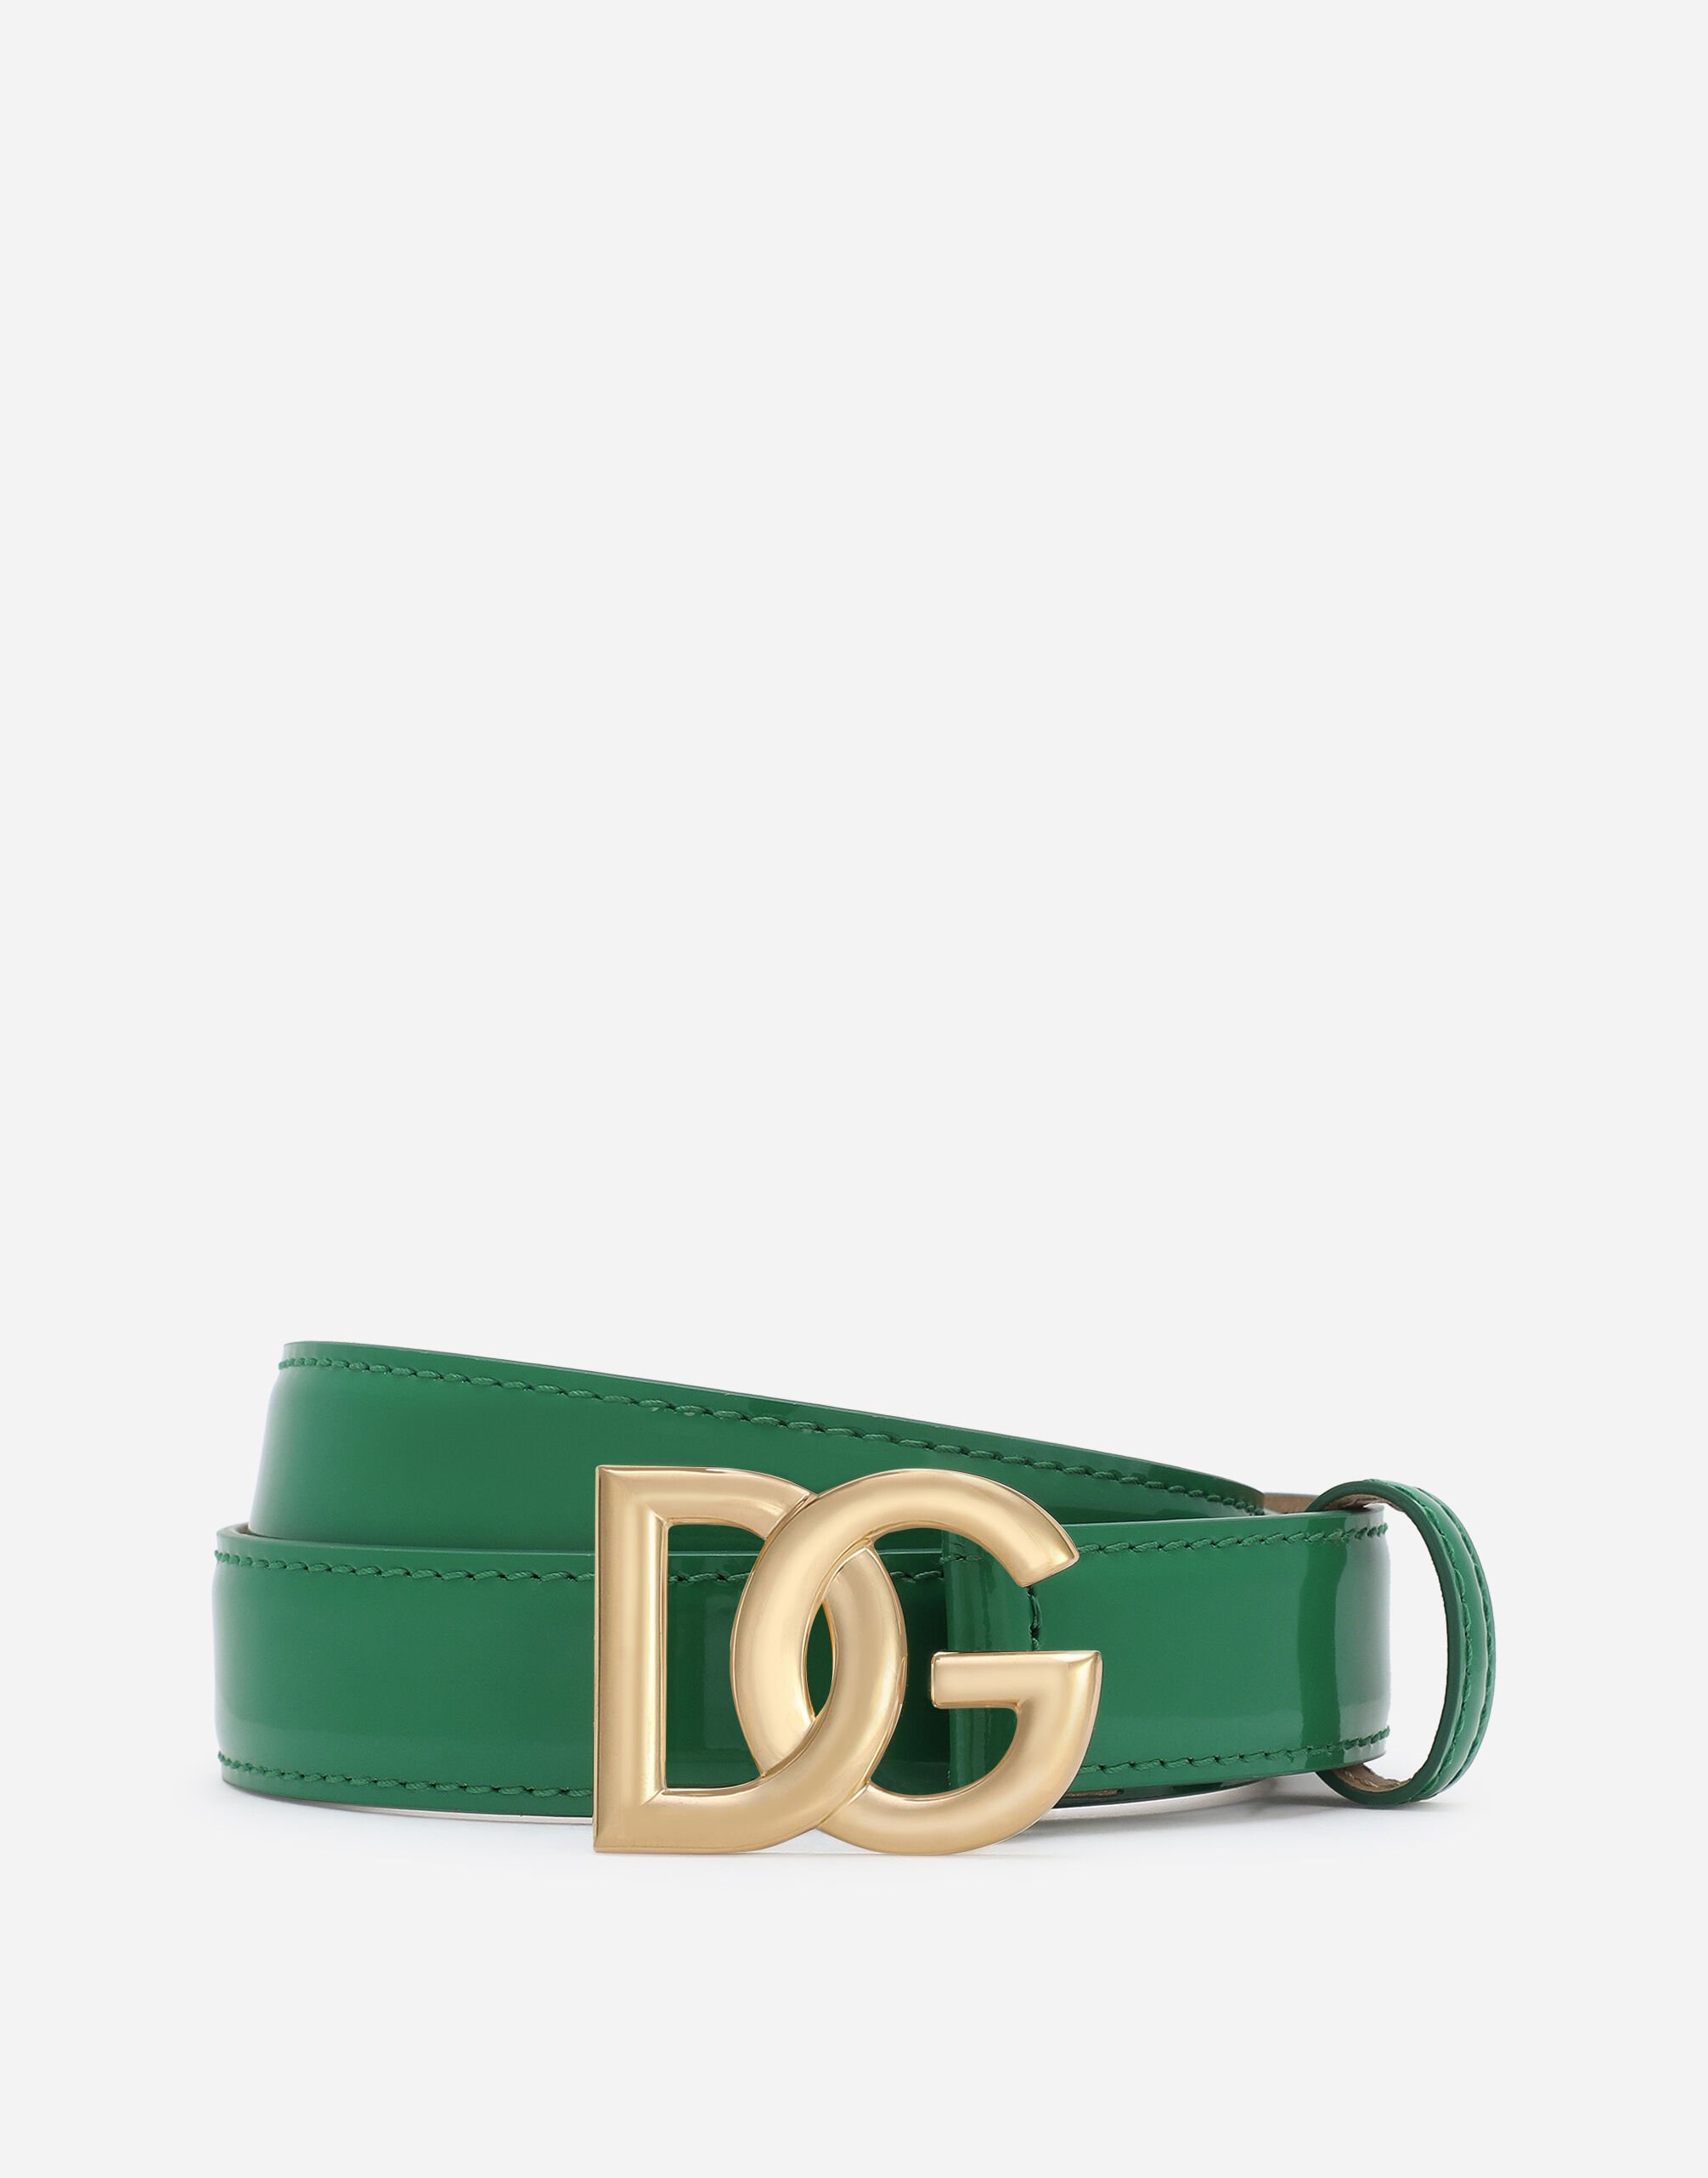 Dolce & Gabbana Cinturón en piel de becerro brillante con logotipo DG Blanco BE1447AW576